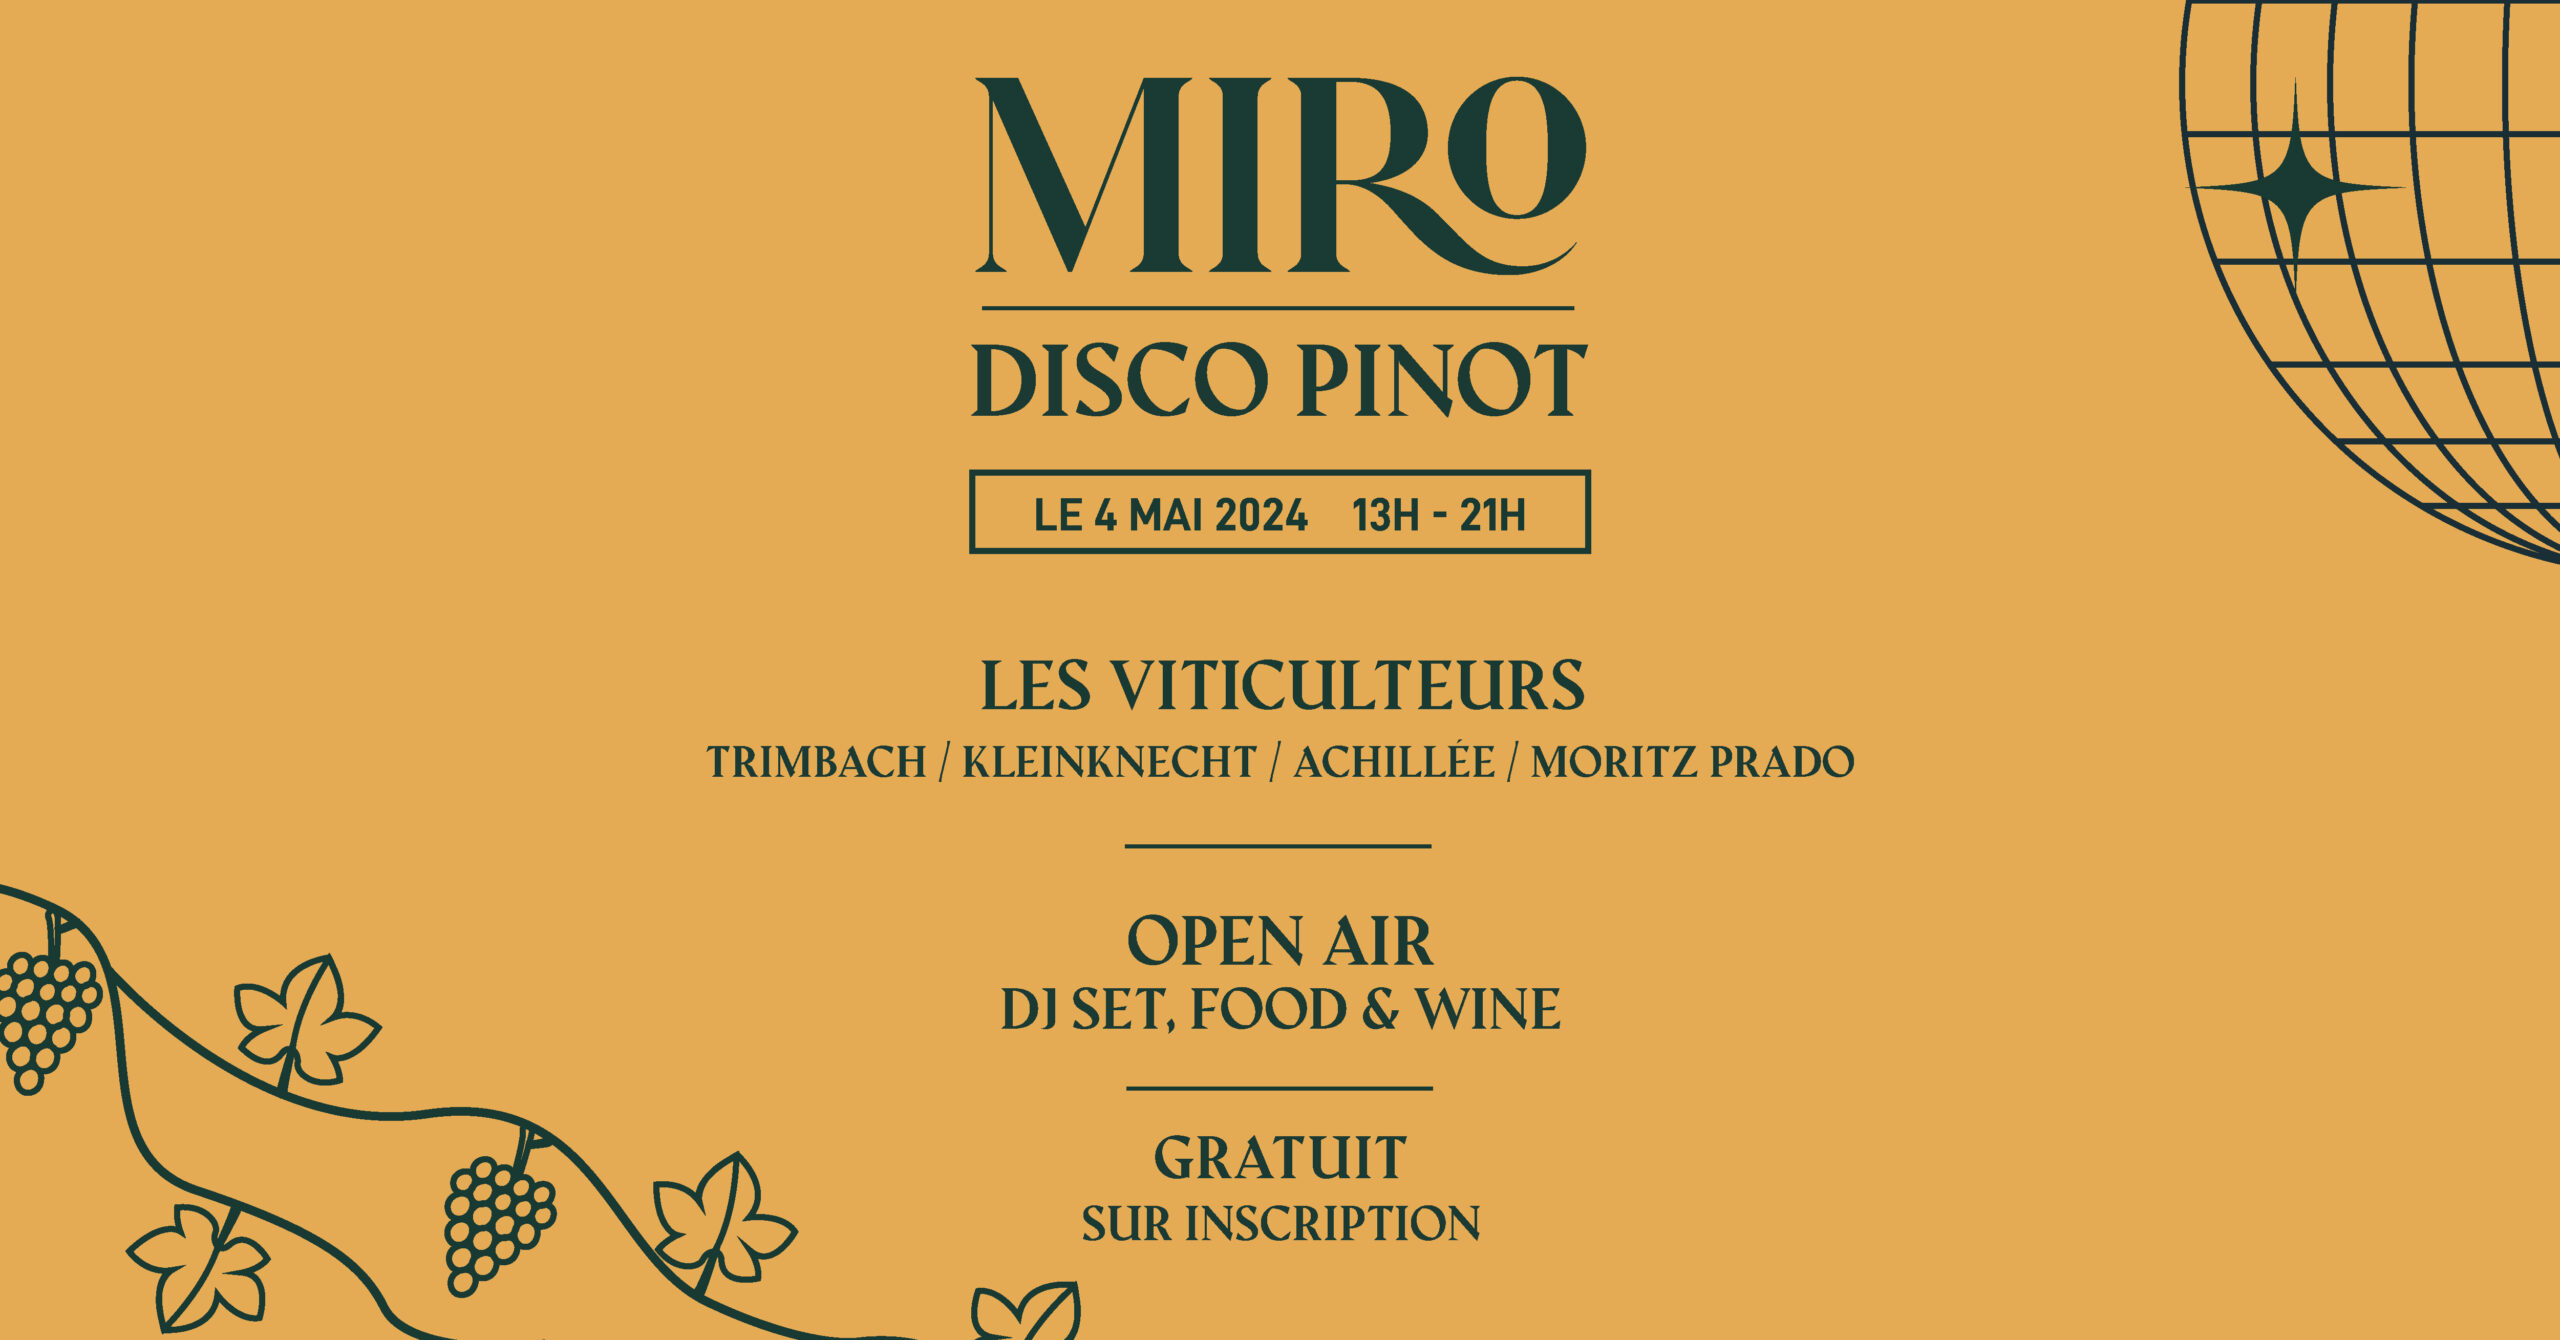 miro-evenement-disco-pinot